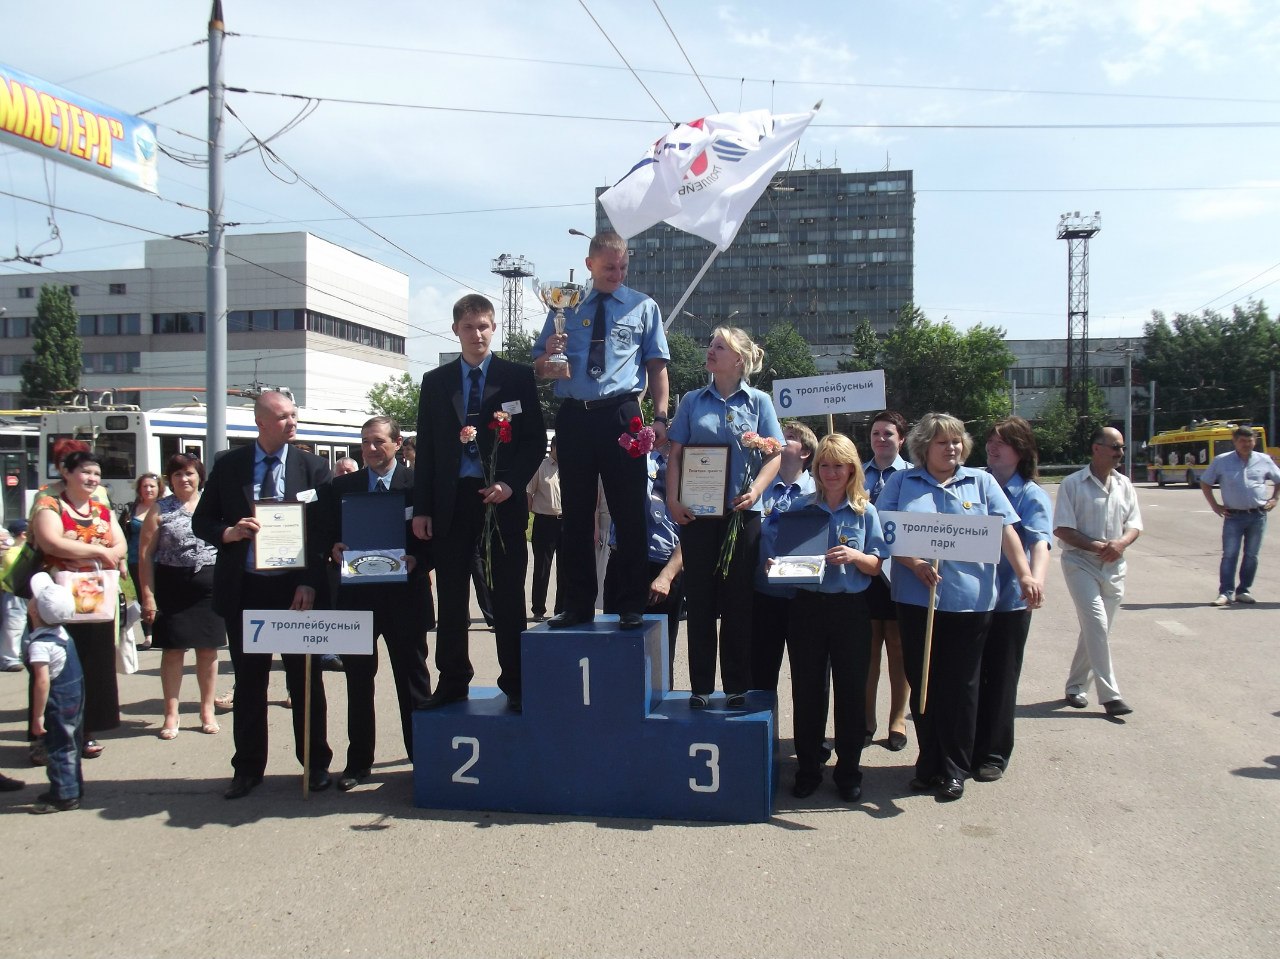 莫斯科 — 34th Championship of Trolleybus Drivers